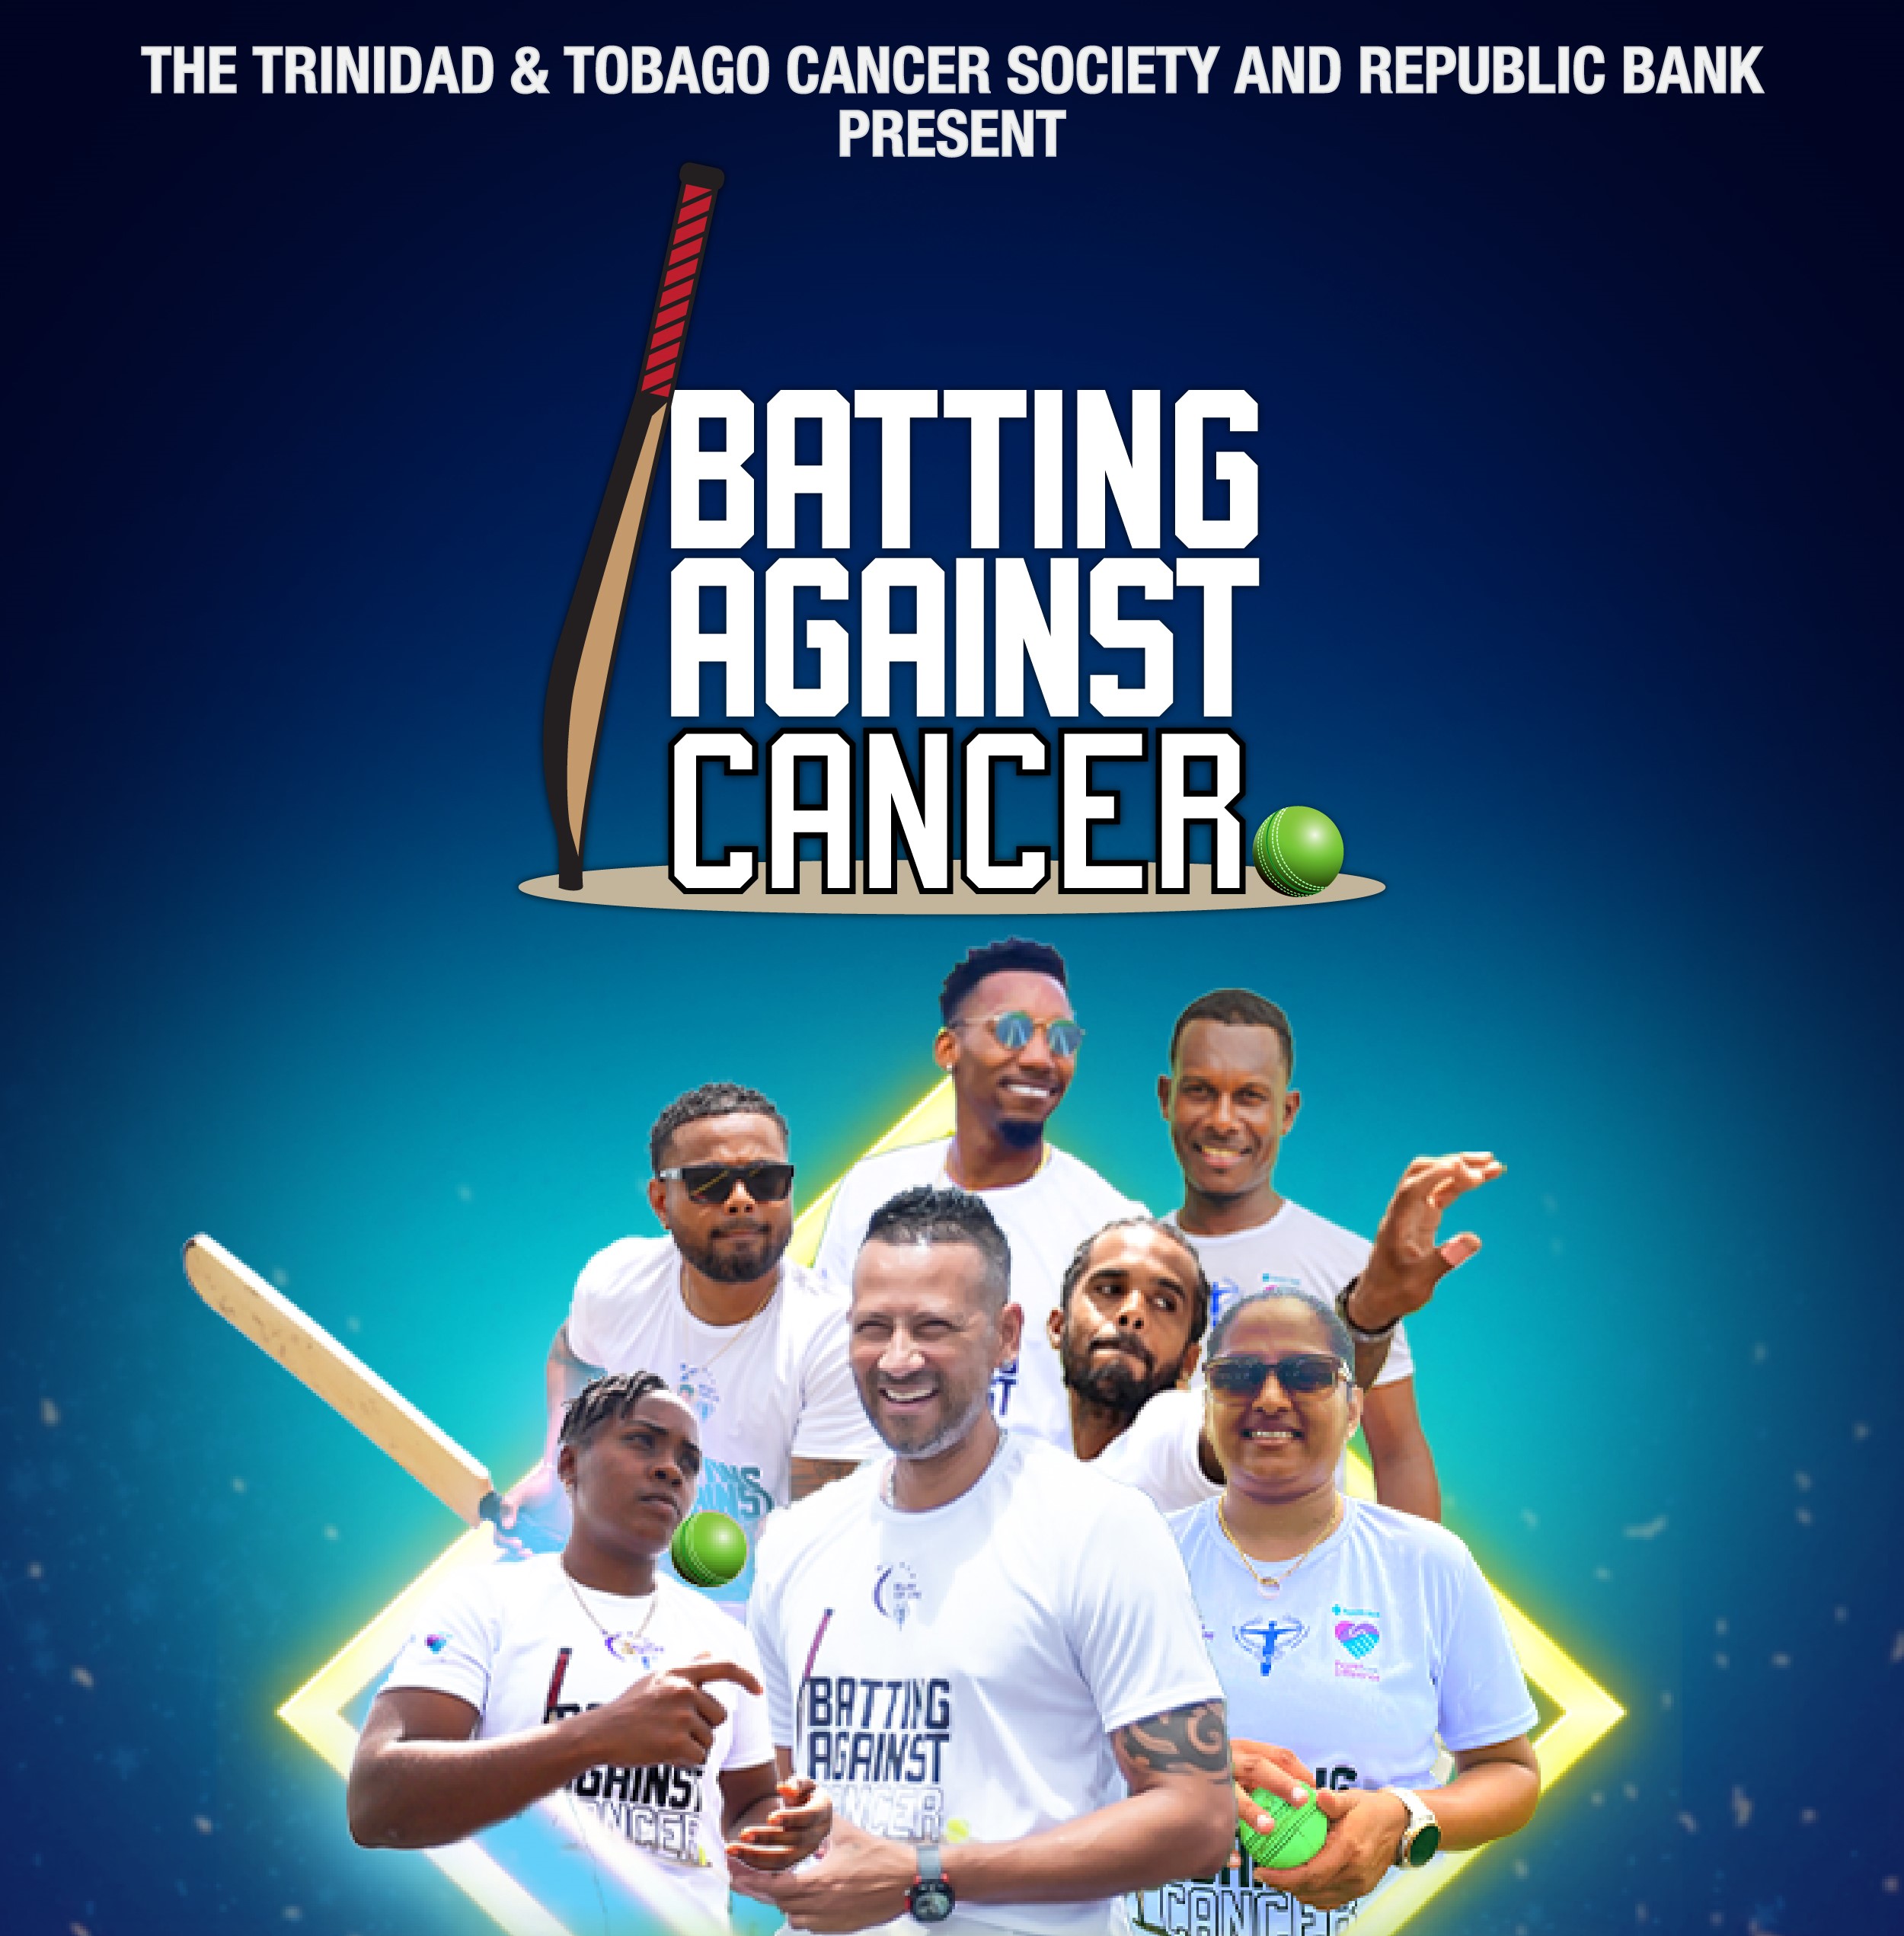 Trinidad & Tobago Cancer Society